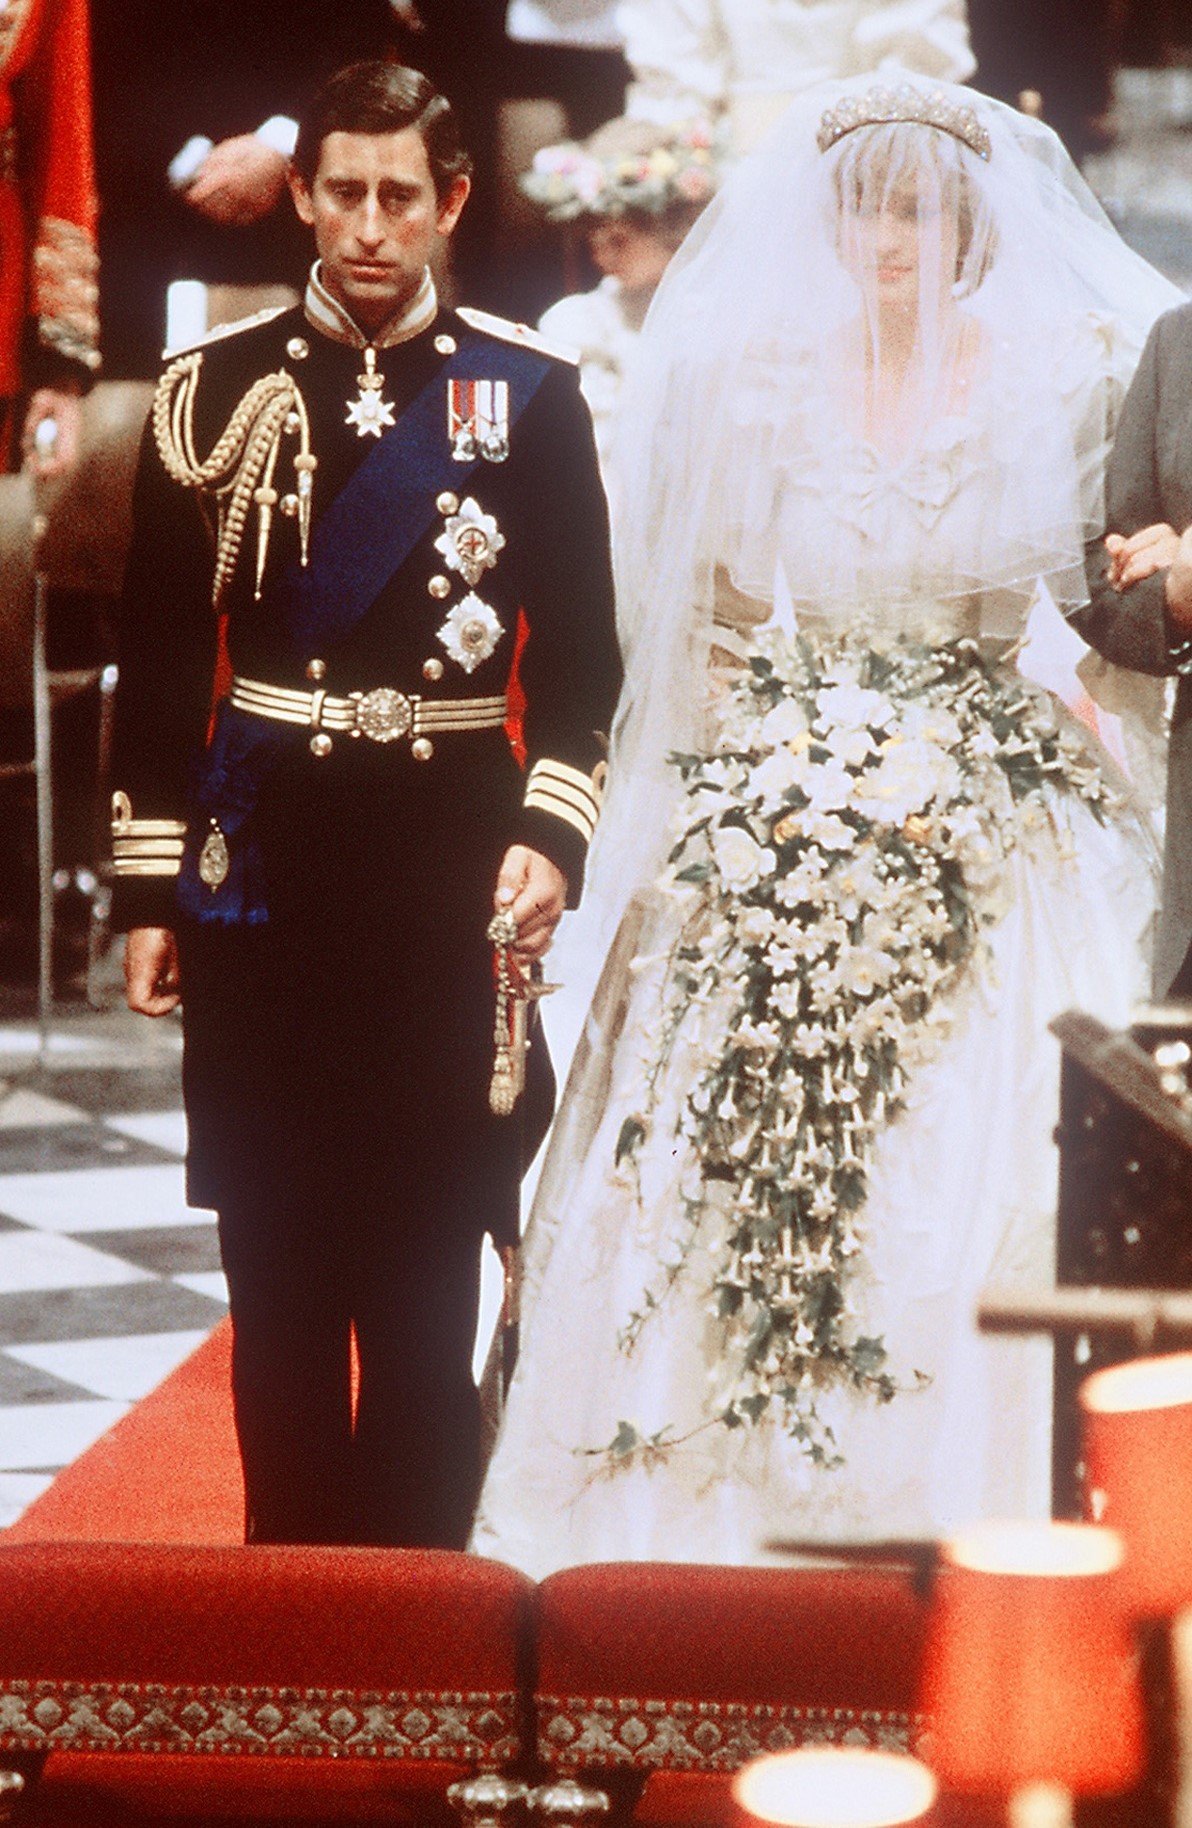 Prince Charles and Princess Diana Wedding Day